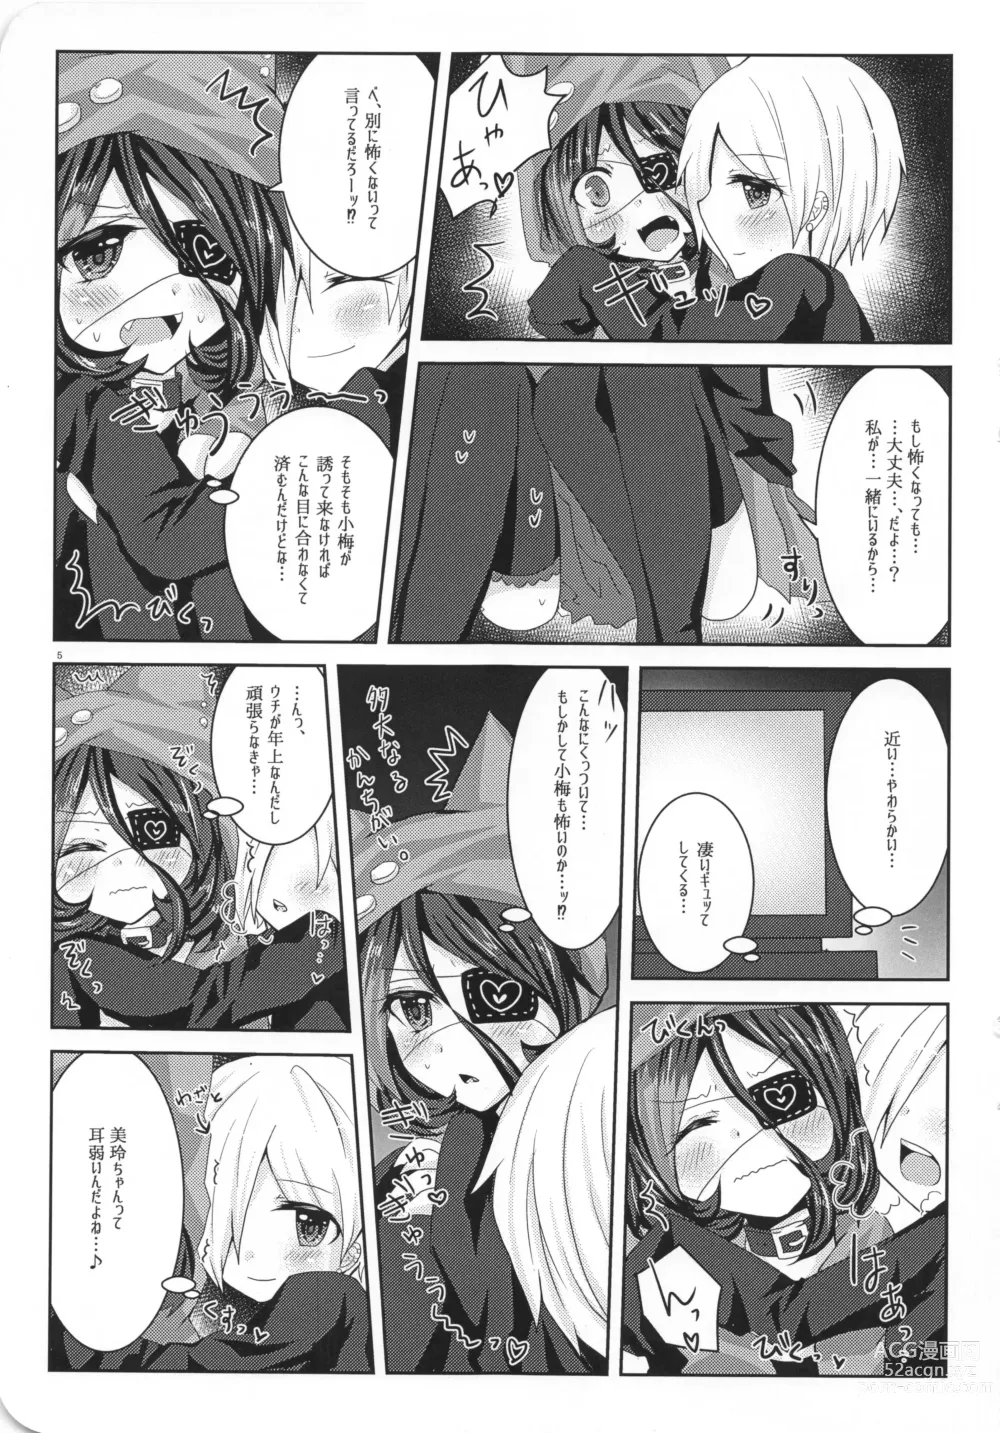 Page 11 of doujinshi Ame Muchi.